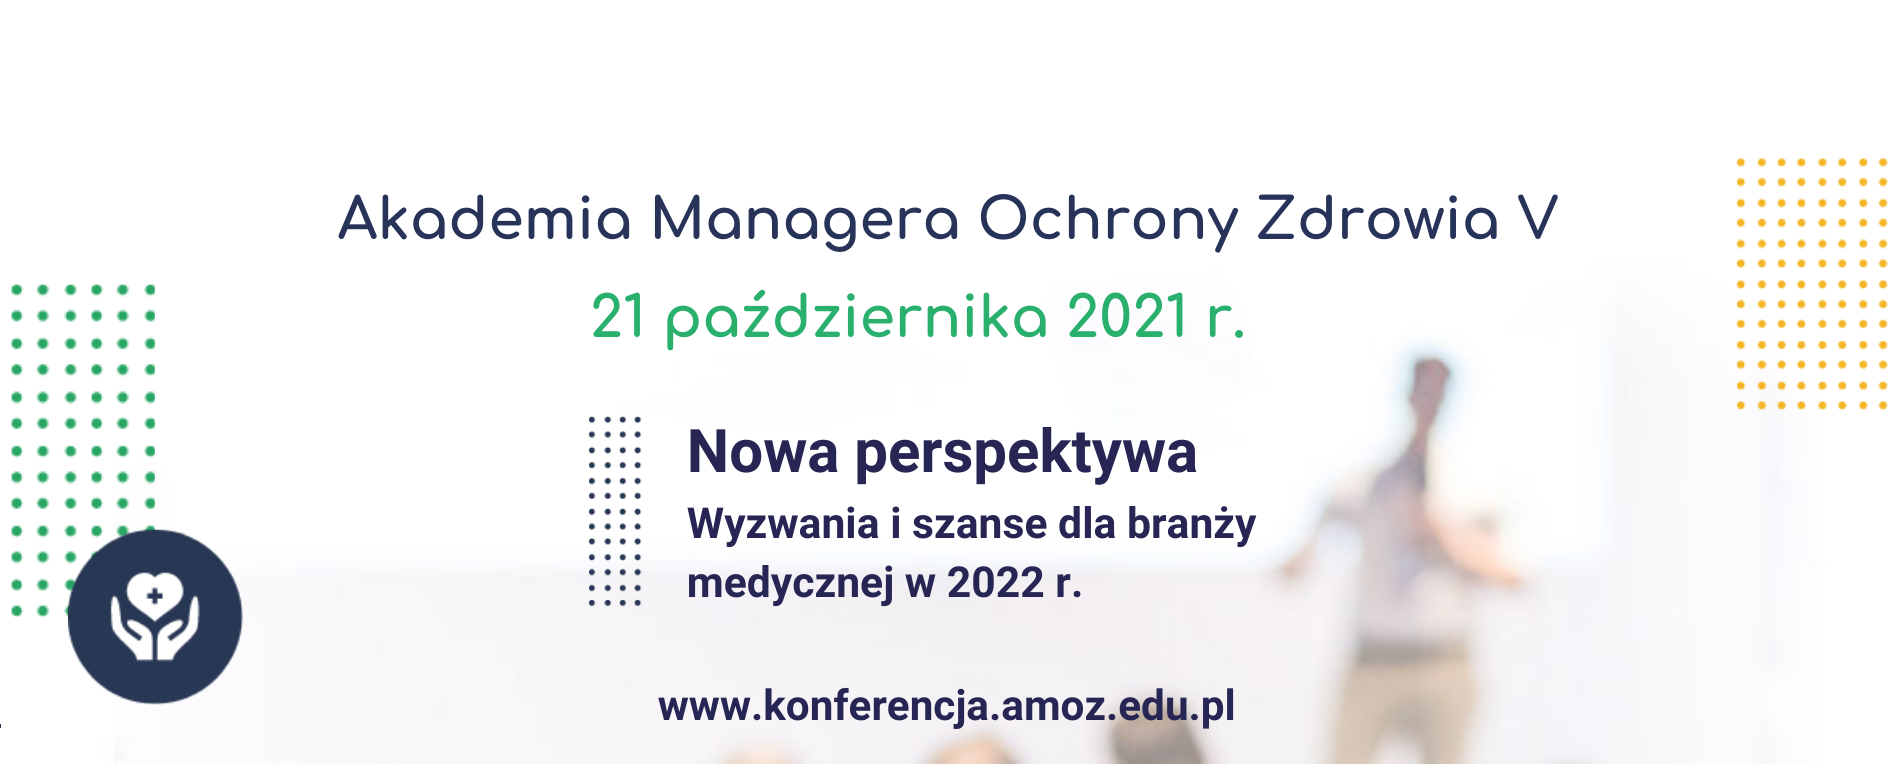 Konferencja Akademia Managera Ochrony Zdrowia V | Warszawa/ONLINE | 21.10.2021